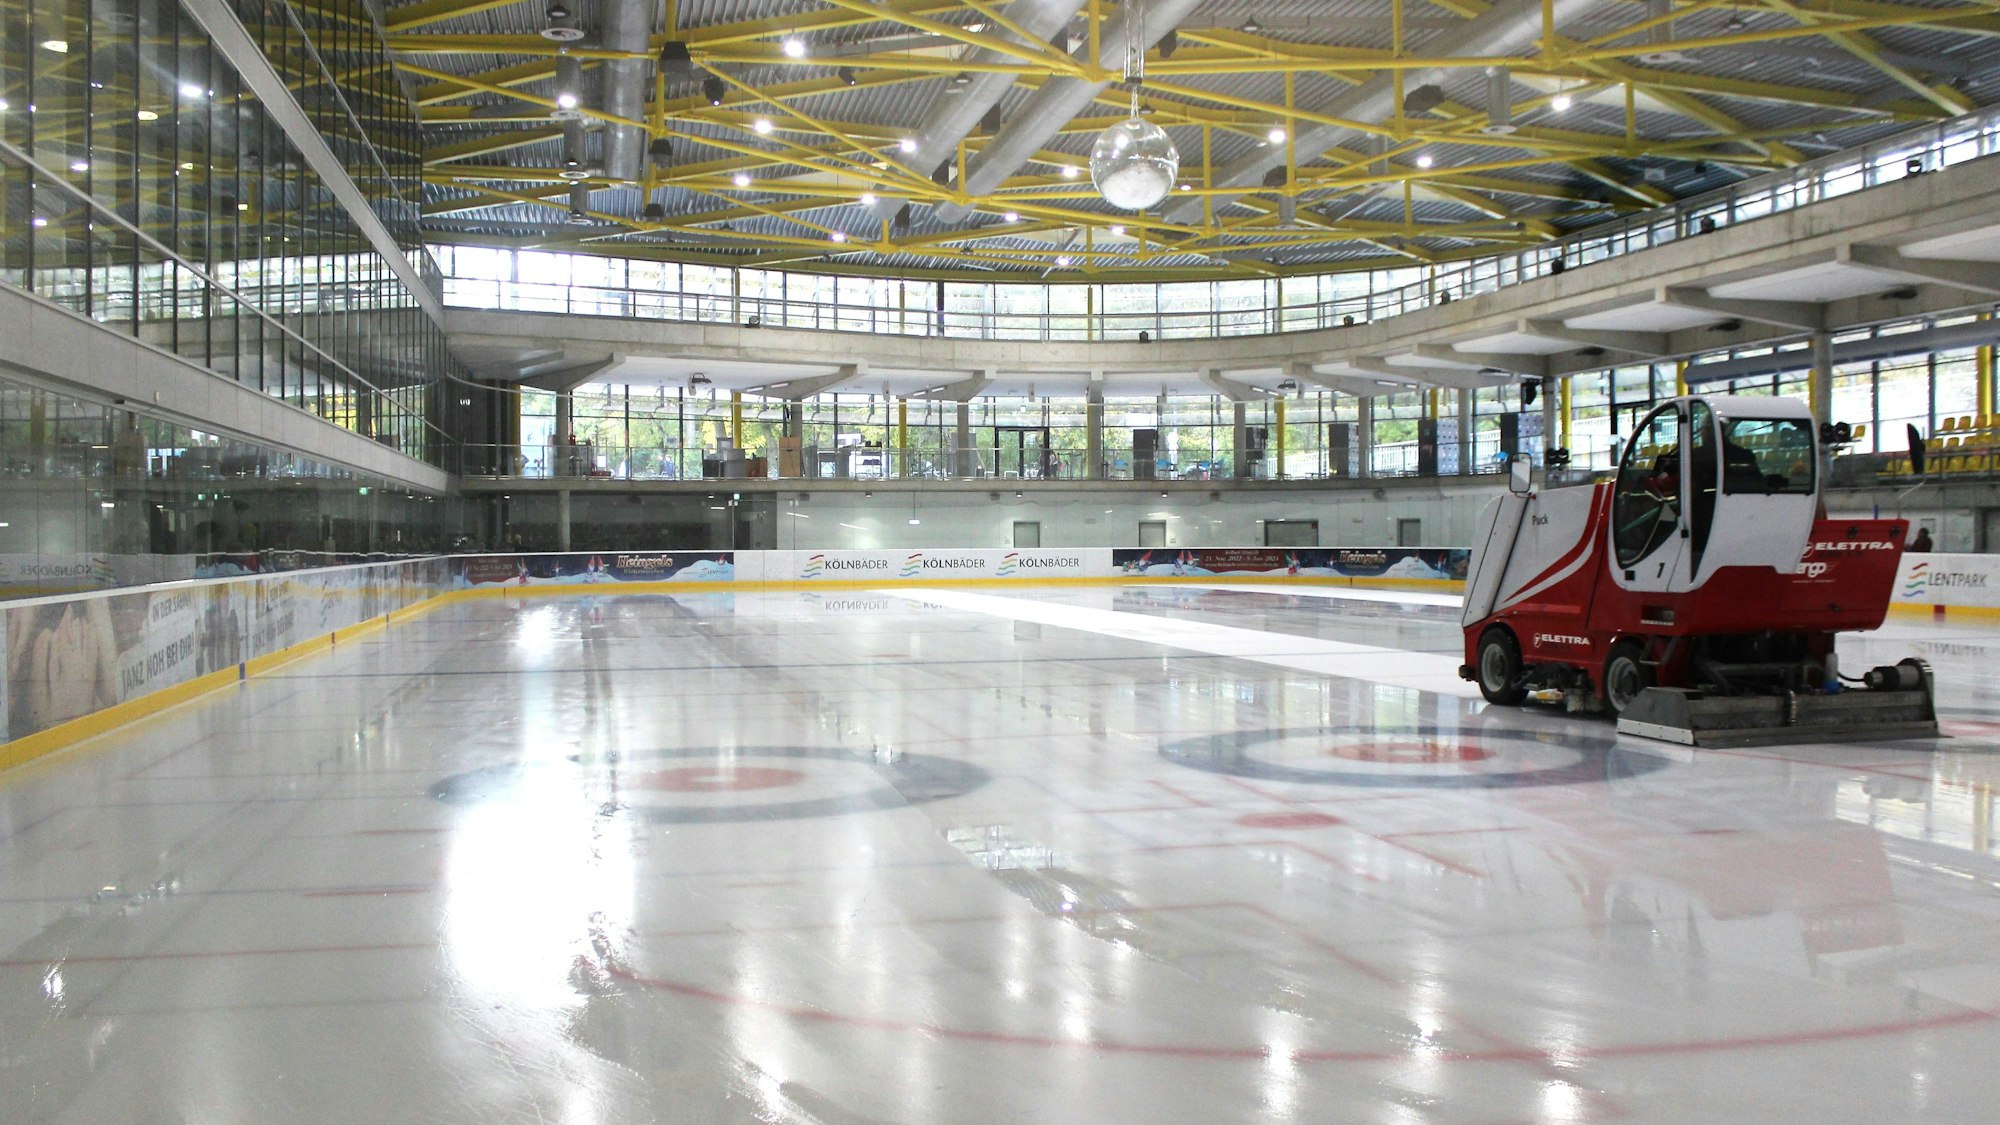 Eismaschine auf der Eisfläche in dem modernen Stadion.